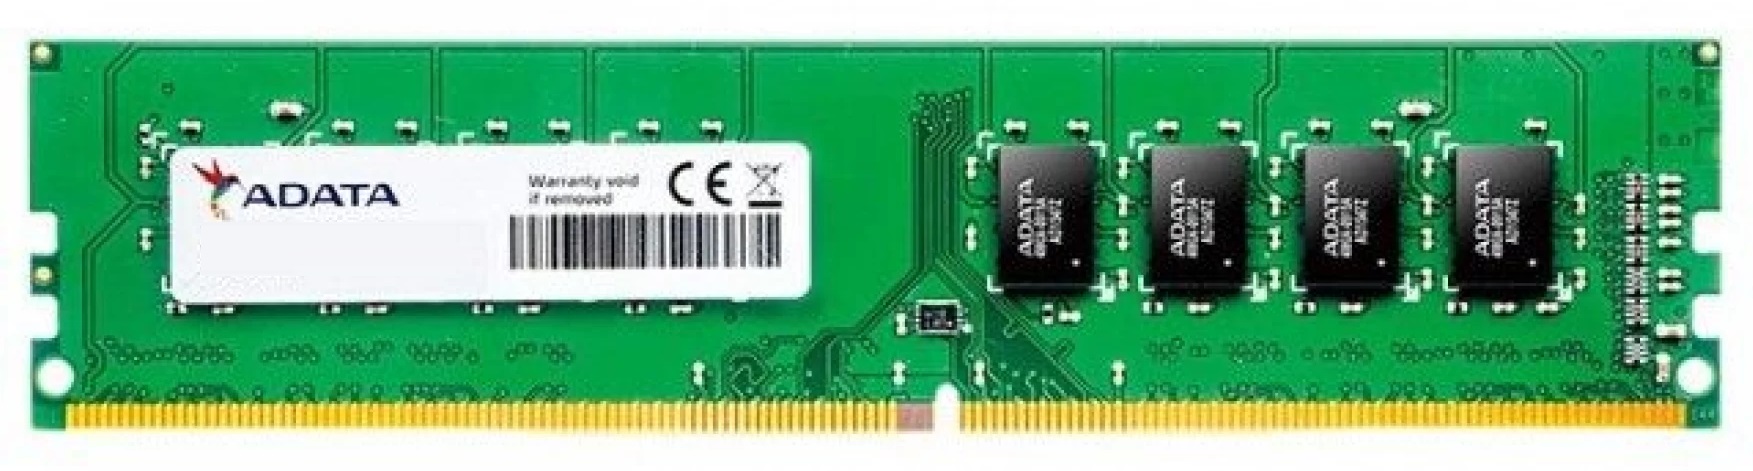 Memoria RAM  4GB para PC de Escritorio / Adata | 2312 - Modulo de Memoria RAM Adata de 4GB para PC de Escritorio. Garantía 3-Años